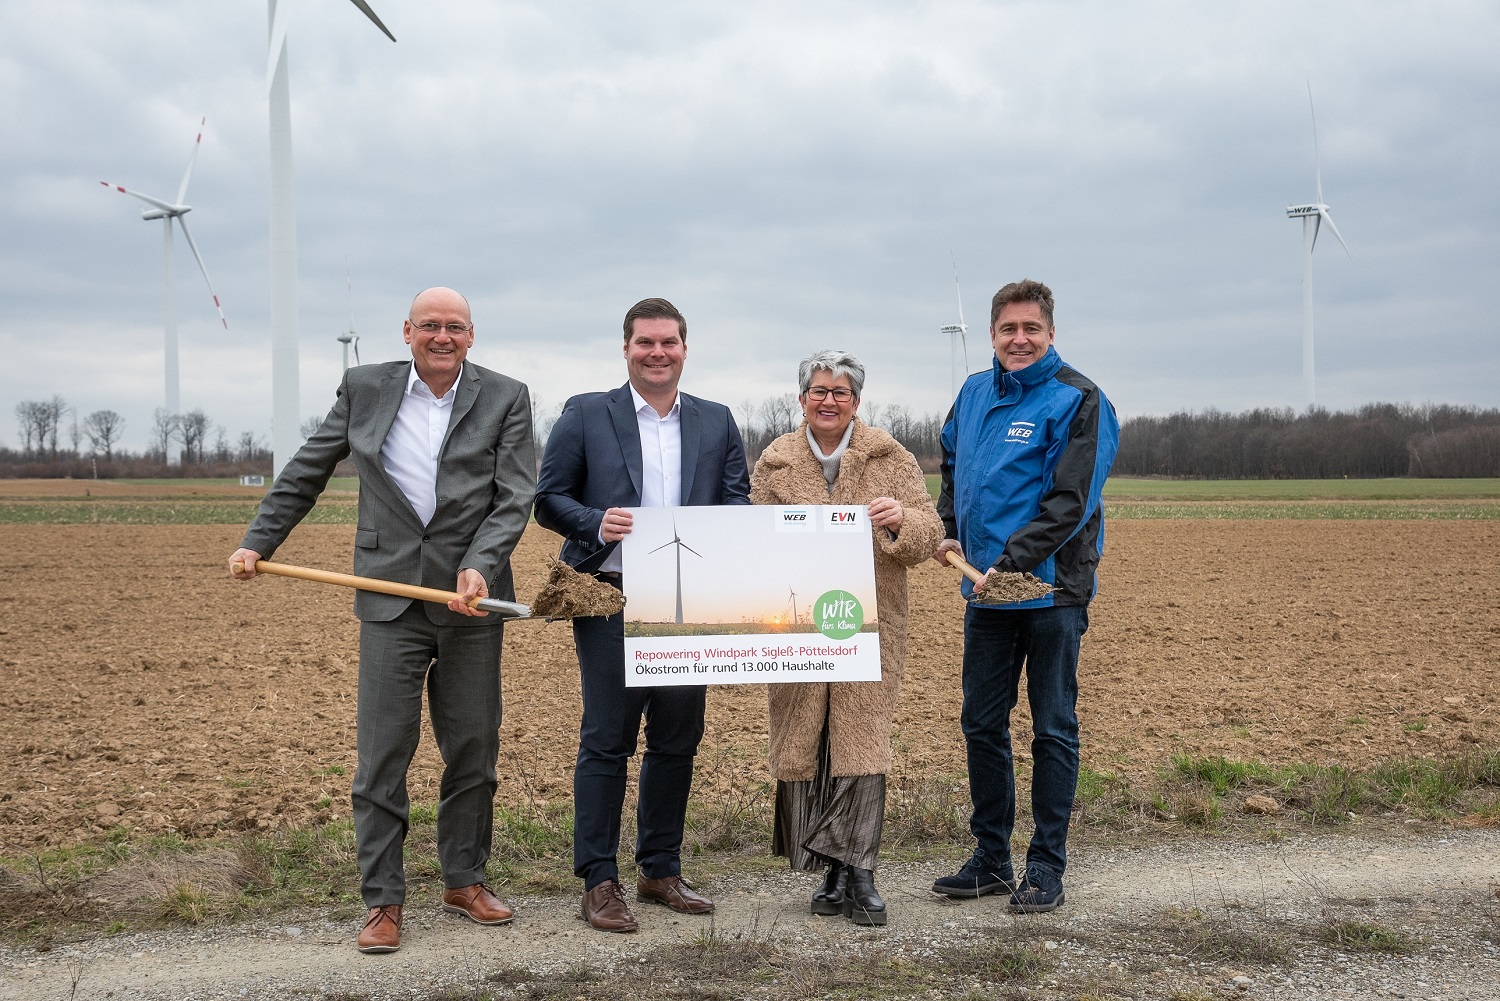 Windpark Sigleß-Pöttelsdorf wird modernisiert 